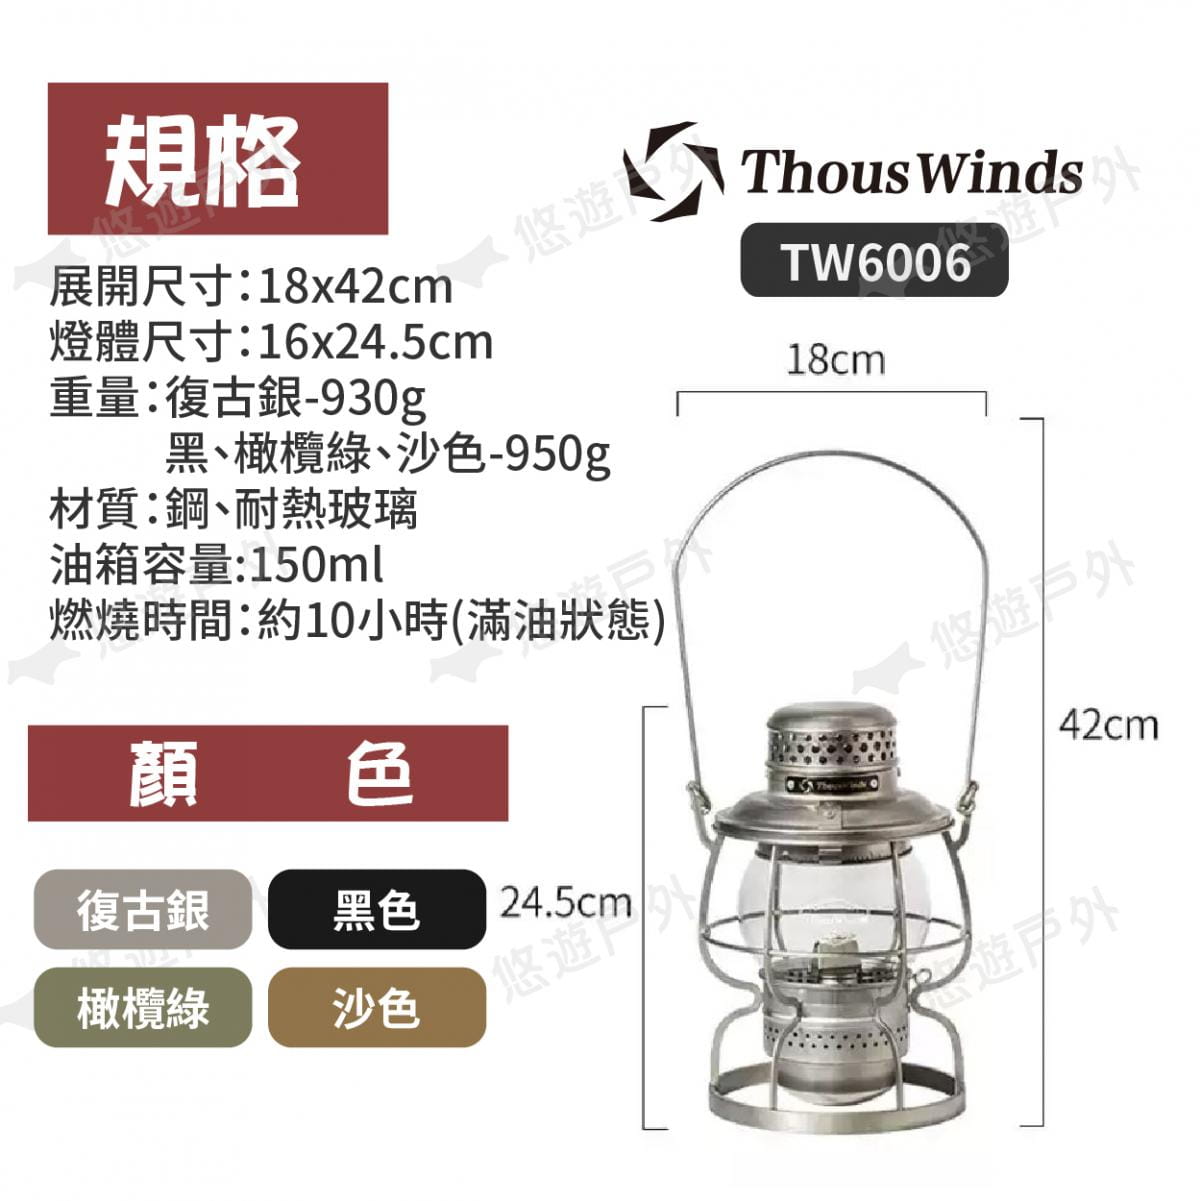 【Thous Winds】鐵路煤油燈 TW6006 悠遊戶外 8